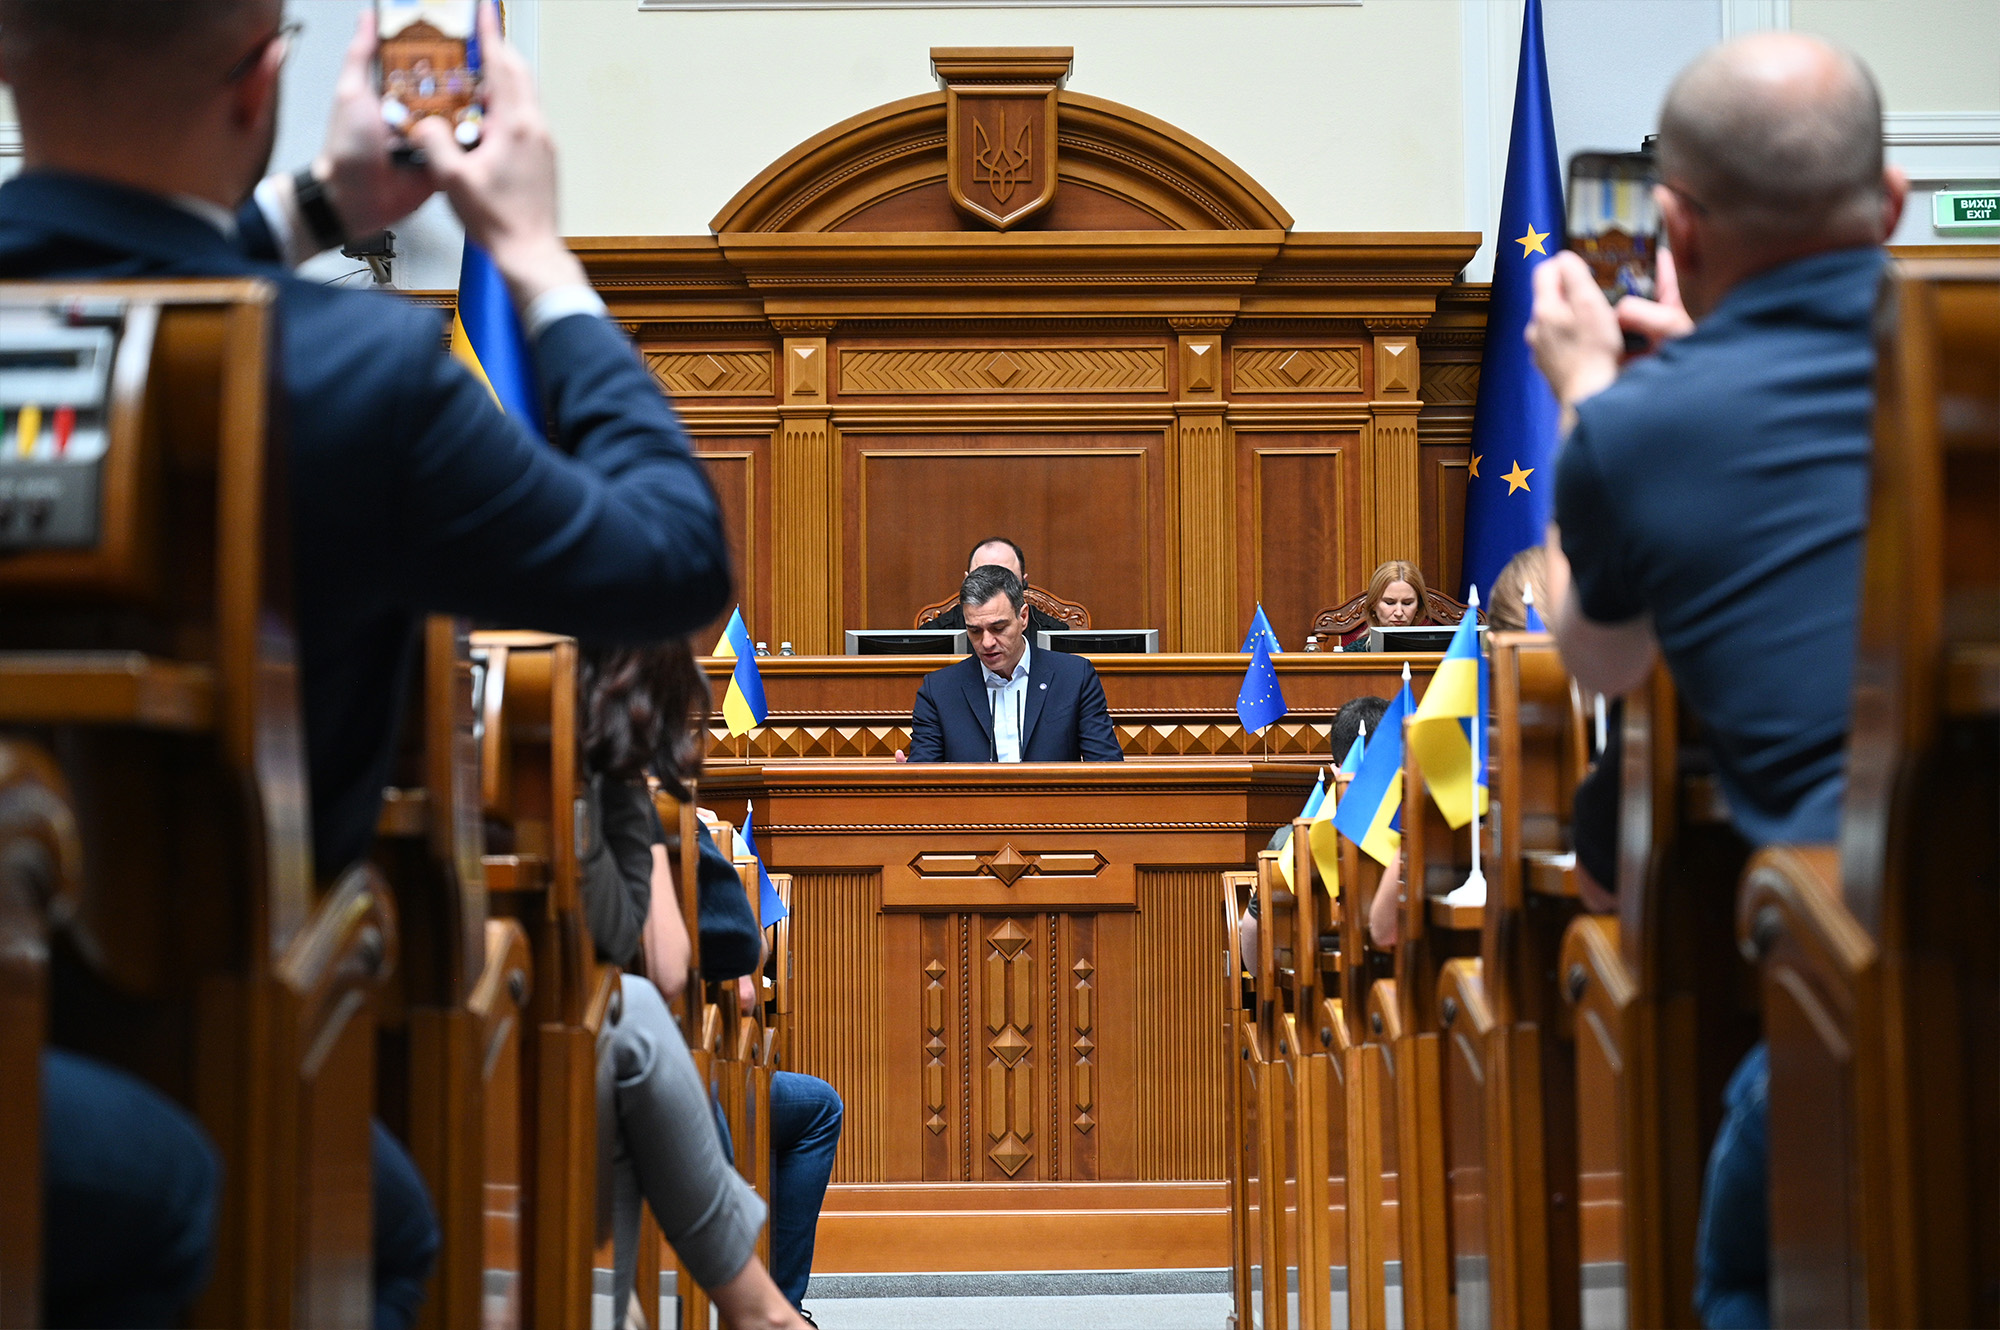 Pedro Sánchez interviene en el Parlamento ucraniano